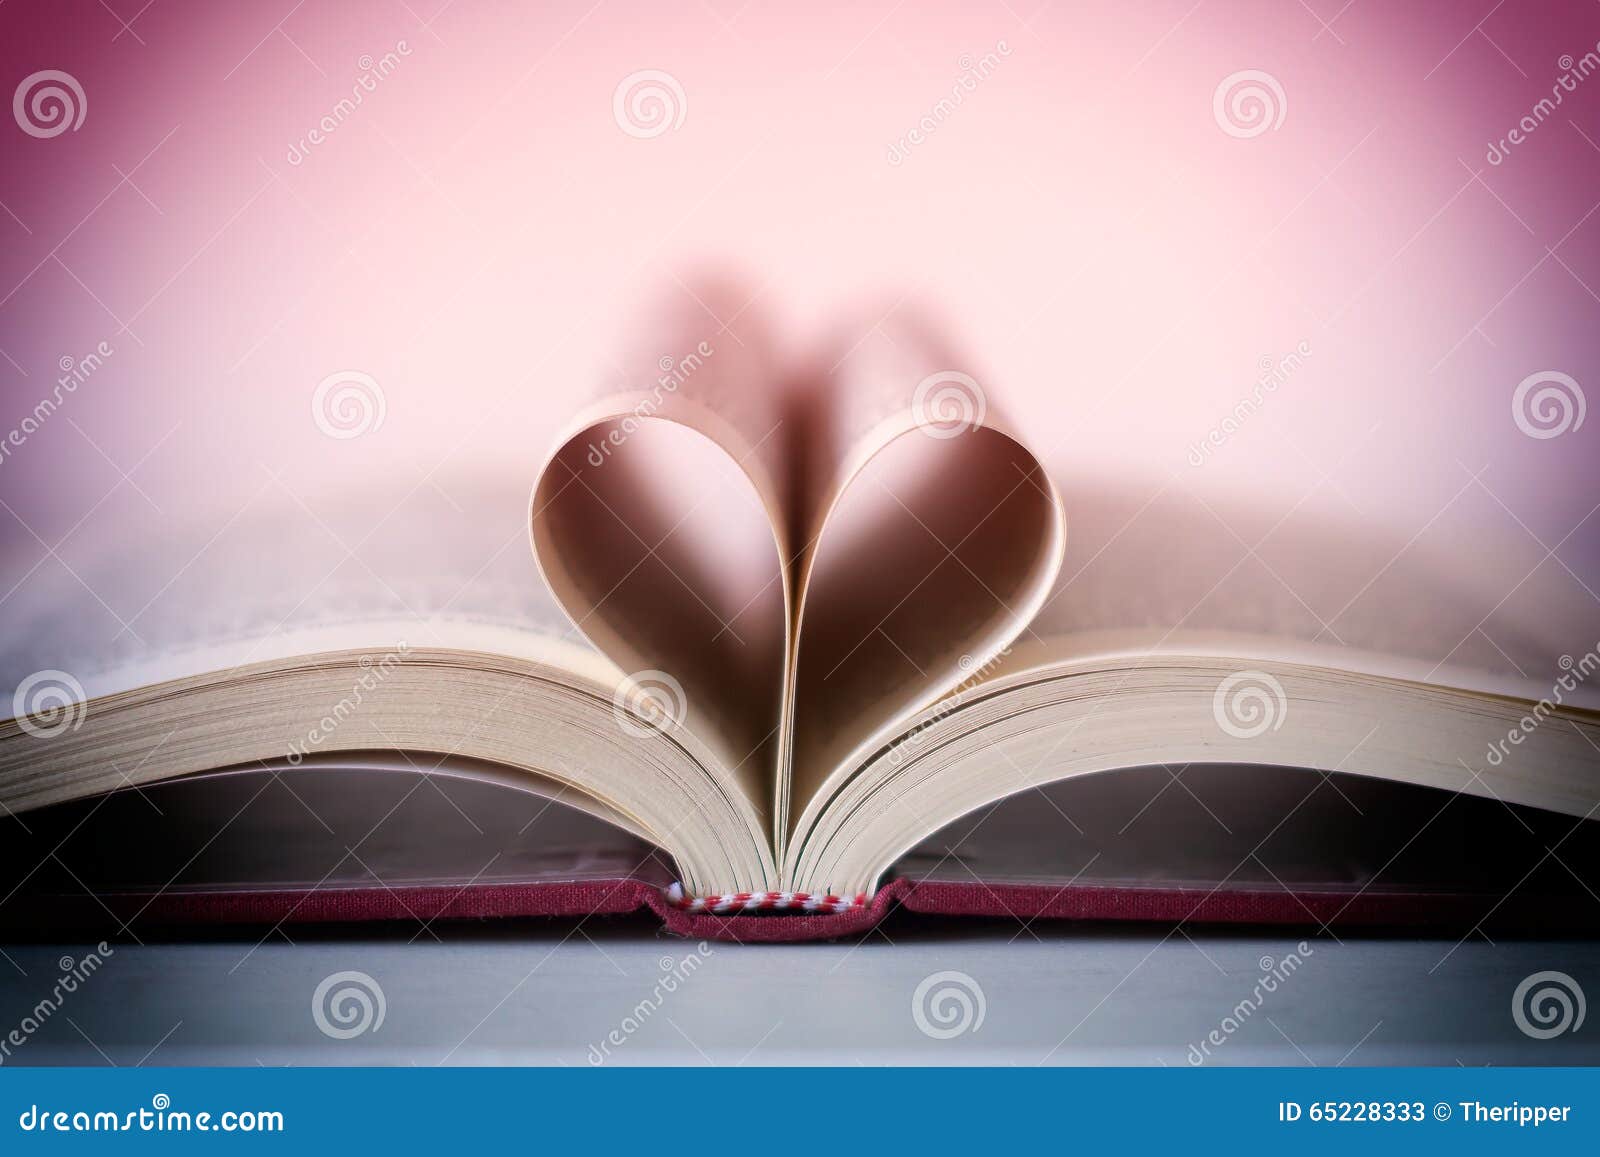 Novela Romántica En Forma De Corazón Imagen de archivo - Imagen de novela,  estudio: 65228333